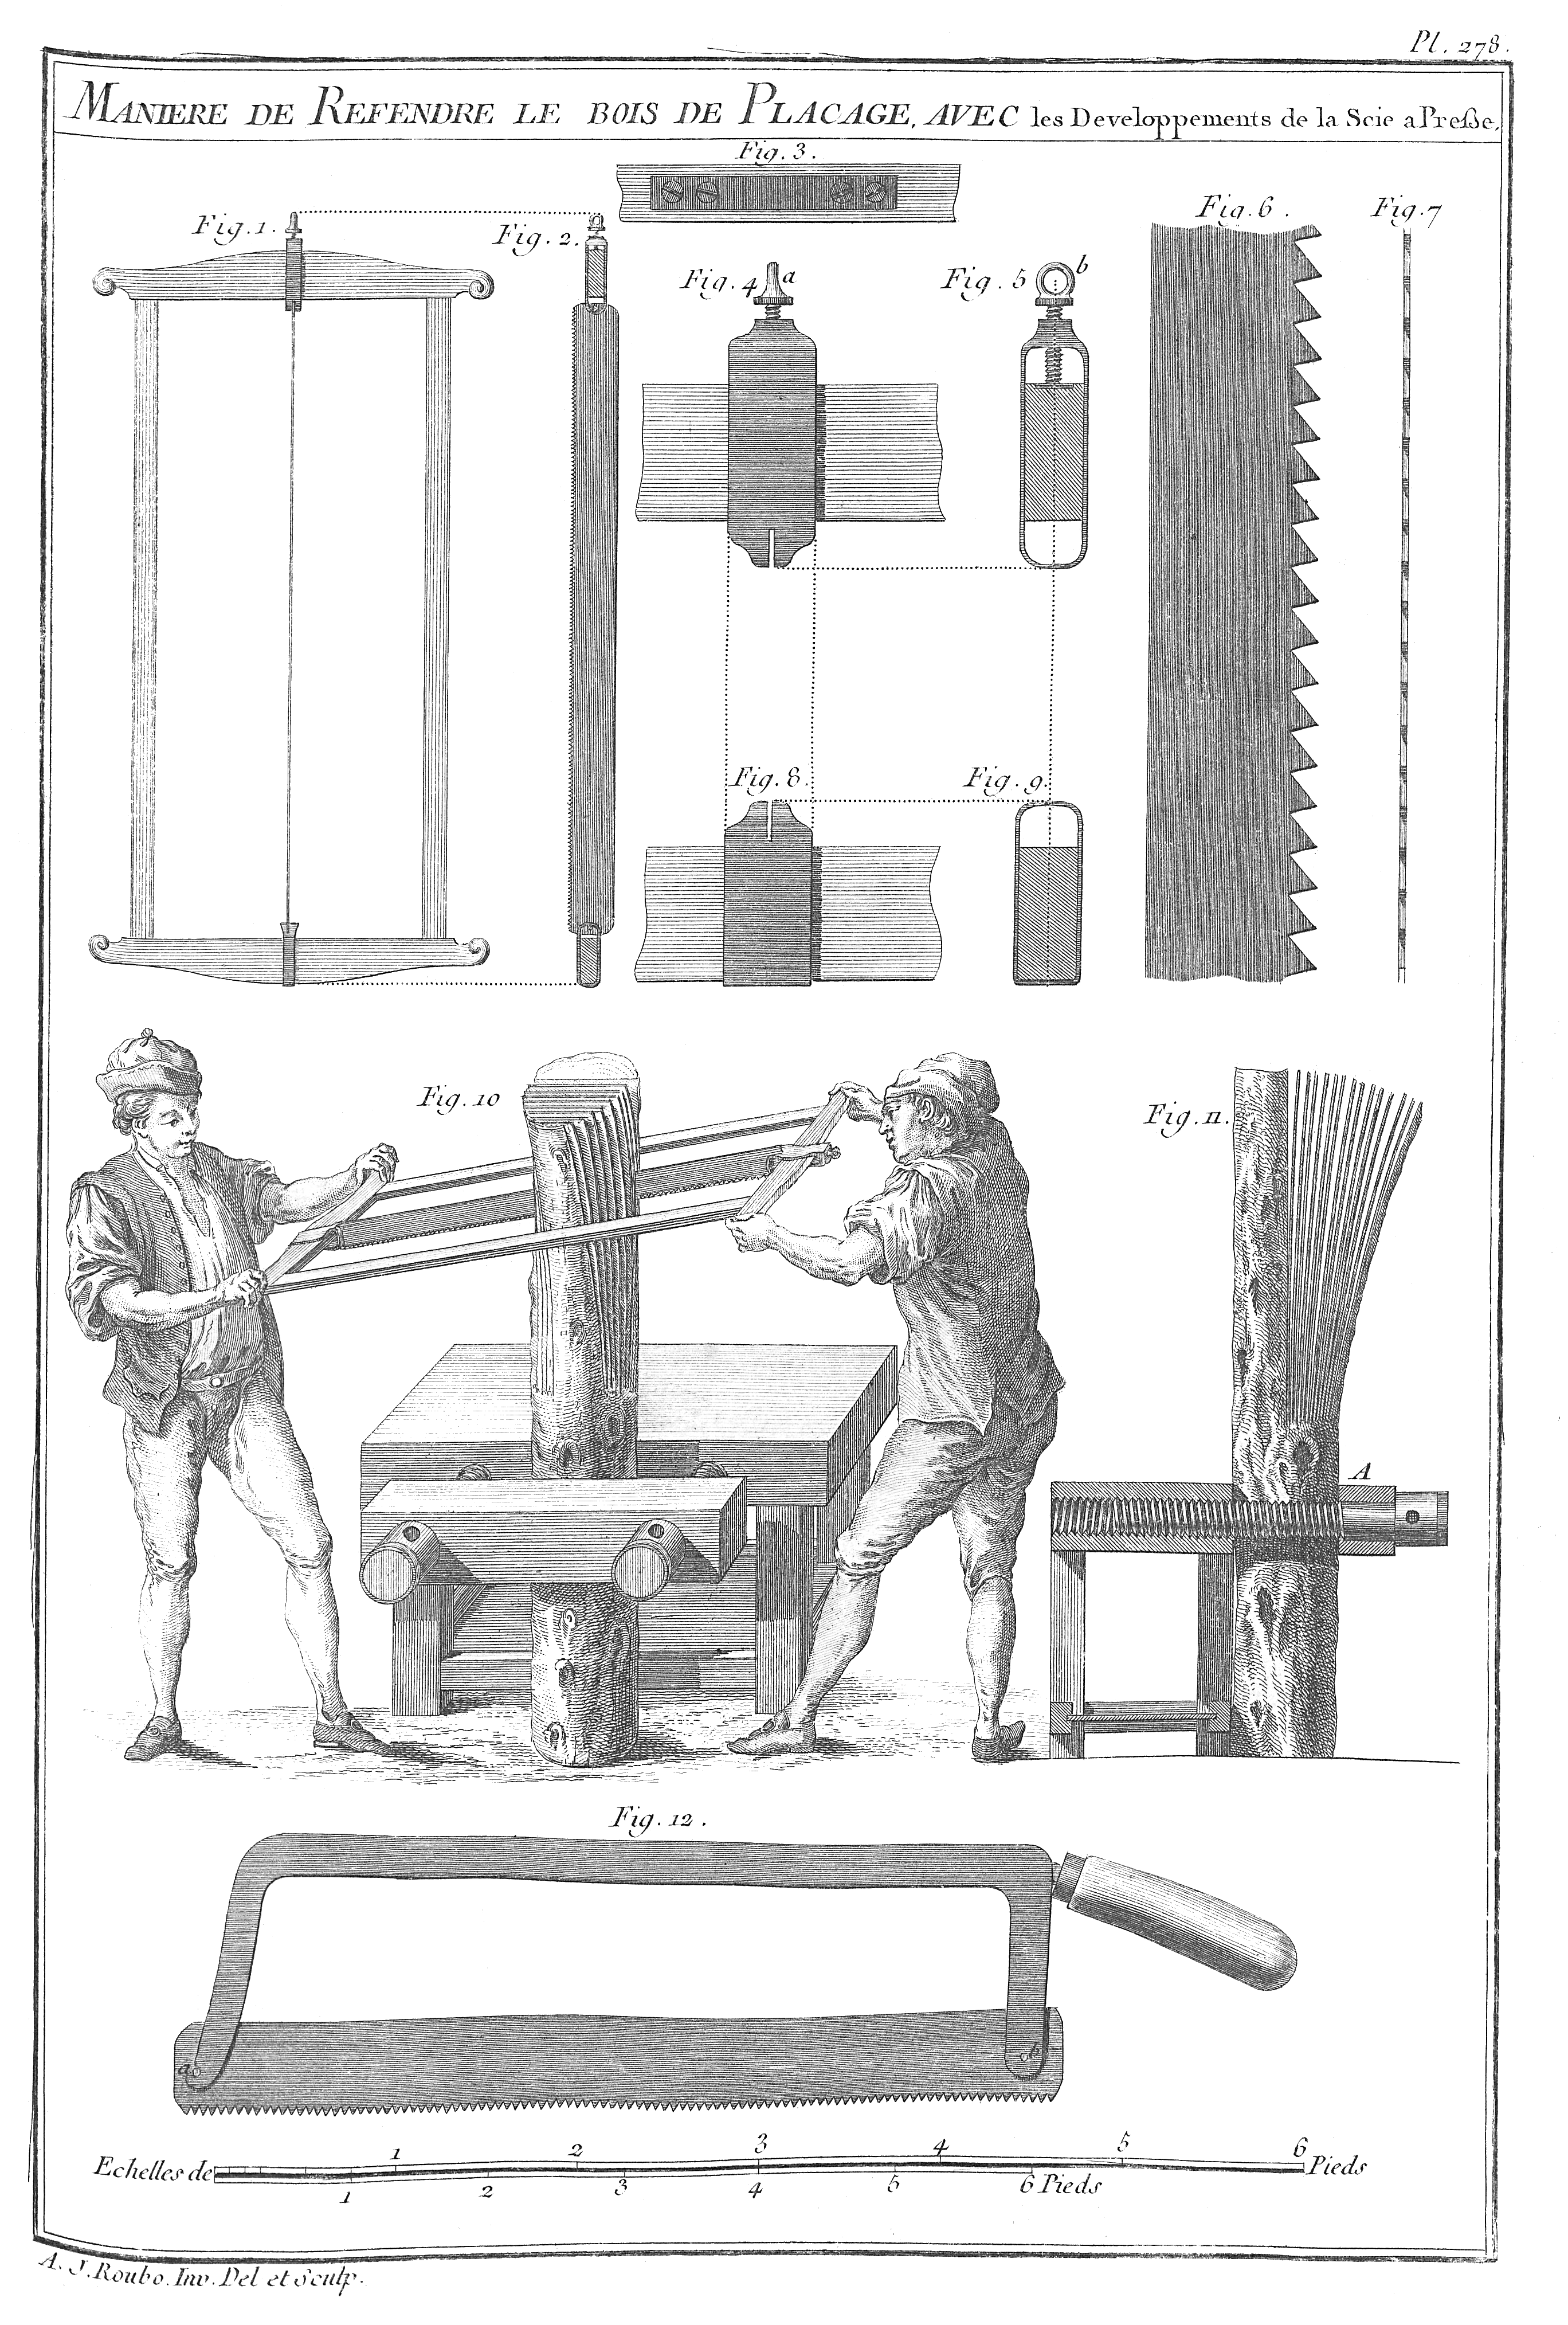 Illustration technique de débit du placage au XVIIIe siècle